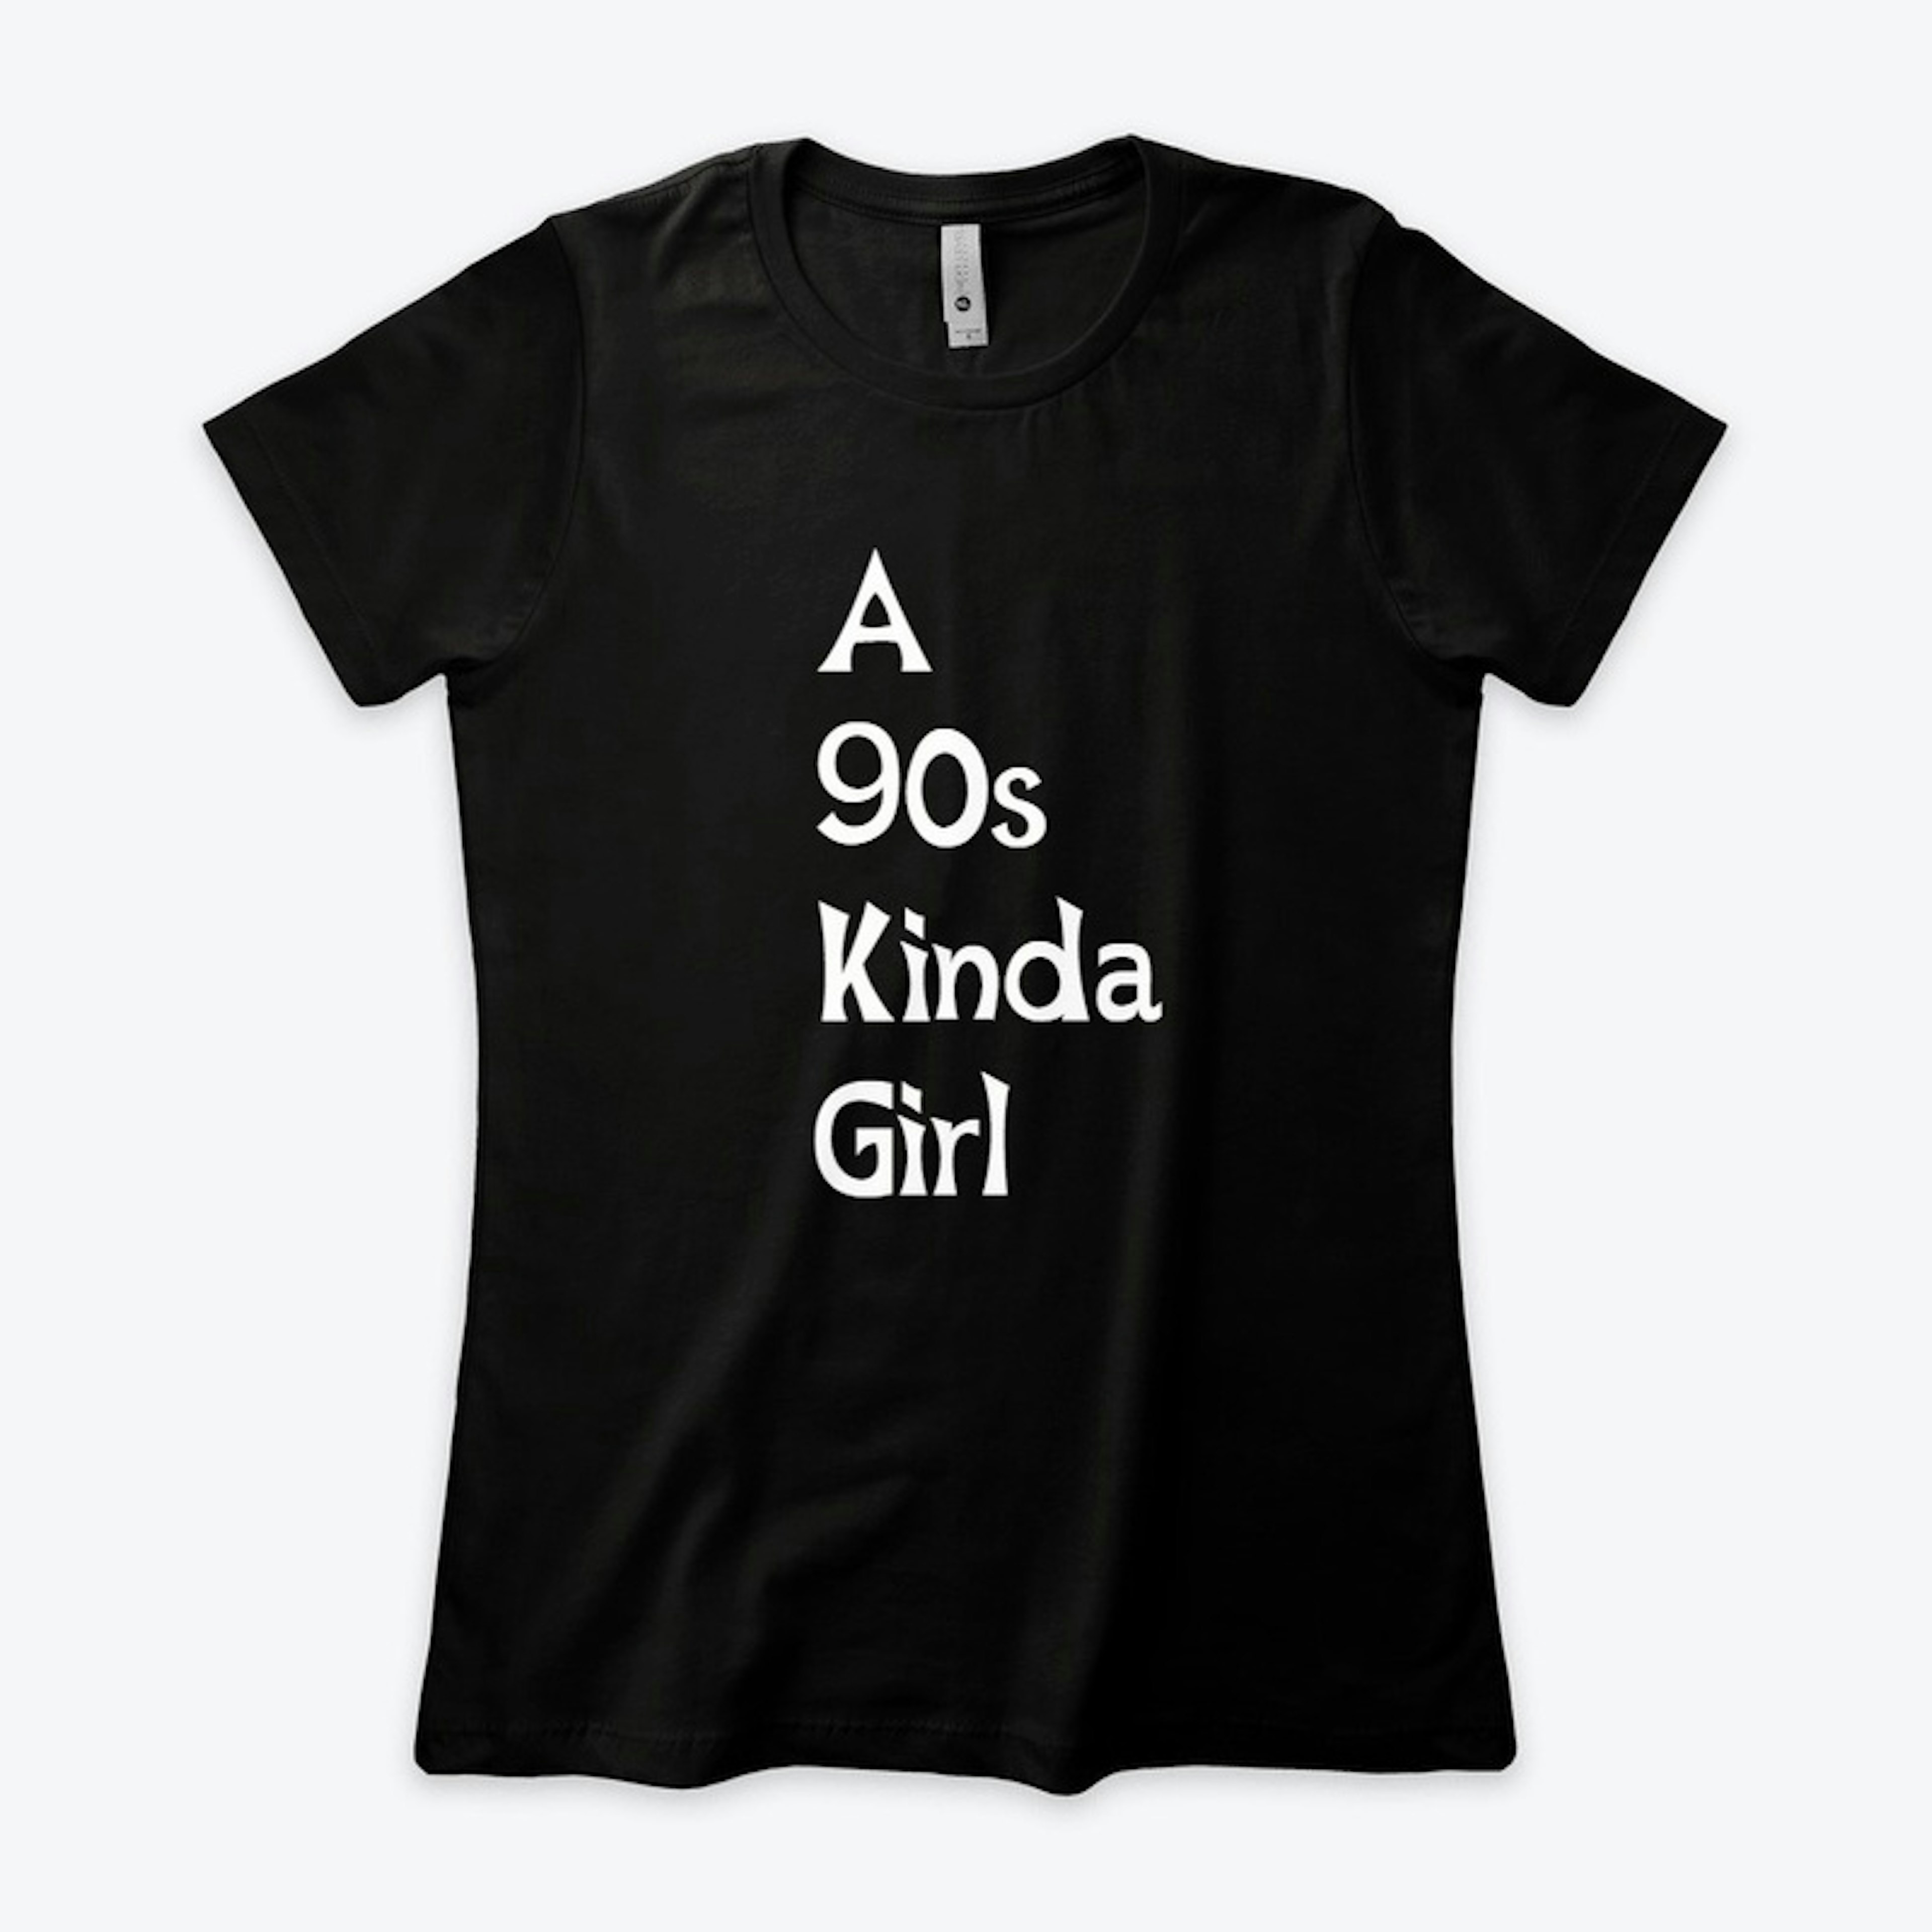 A 90's Kinda Girl